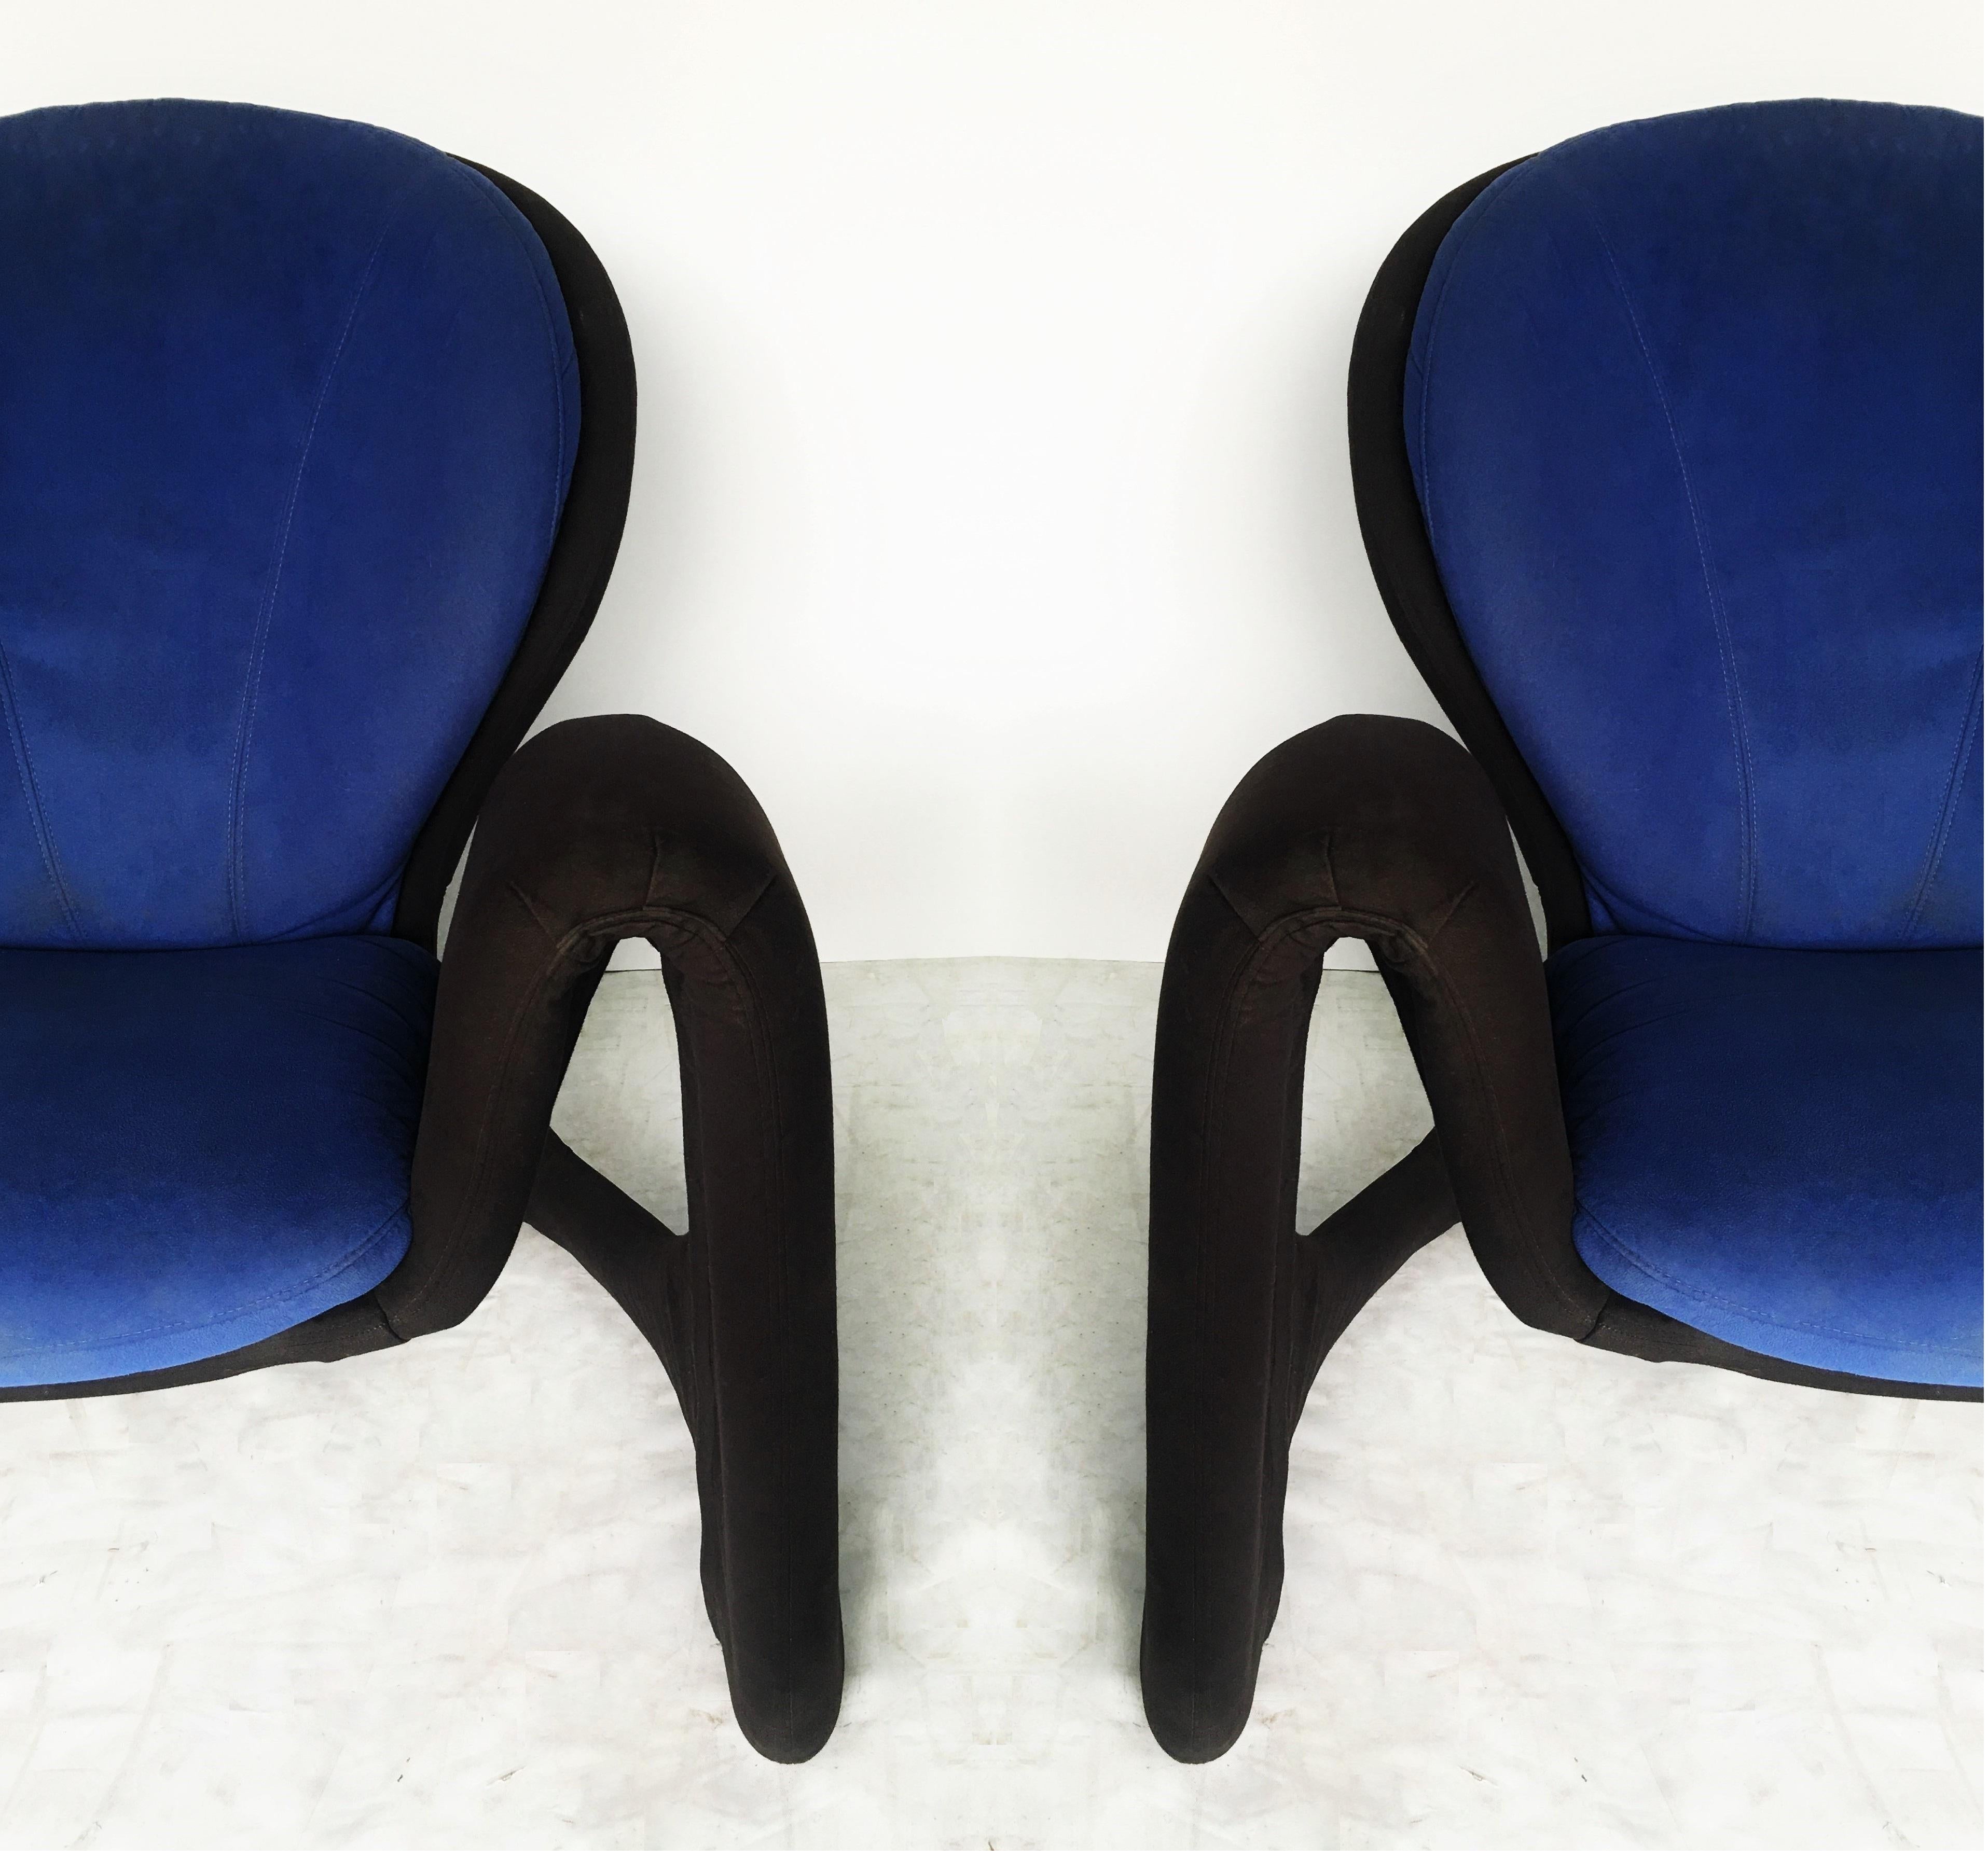 Schlichtes, aber beeindruckendes Design, ca. Ende der 1980er/Anfang der 1990er Jahre. Der Sessel ist nicht gekennzeichnet, aber sehr stark im Stil von Jaymar Pierre Paulin Louis Durot. Professionell gepolstert in Schwarz und Blau. Mit ihren